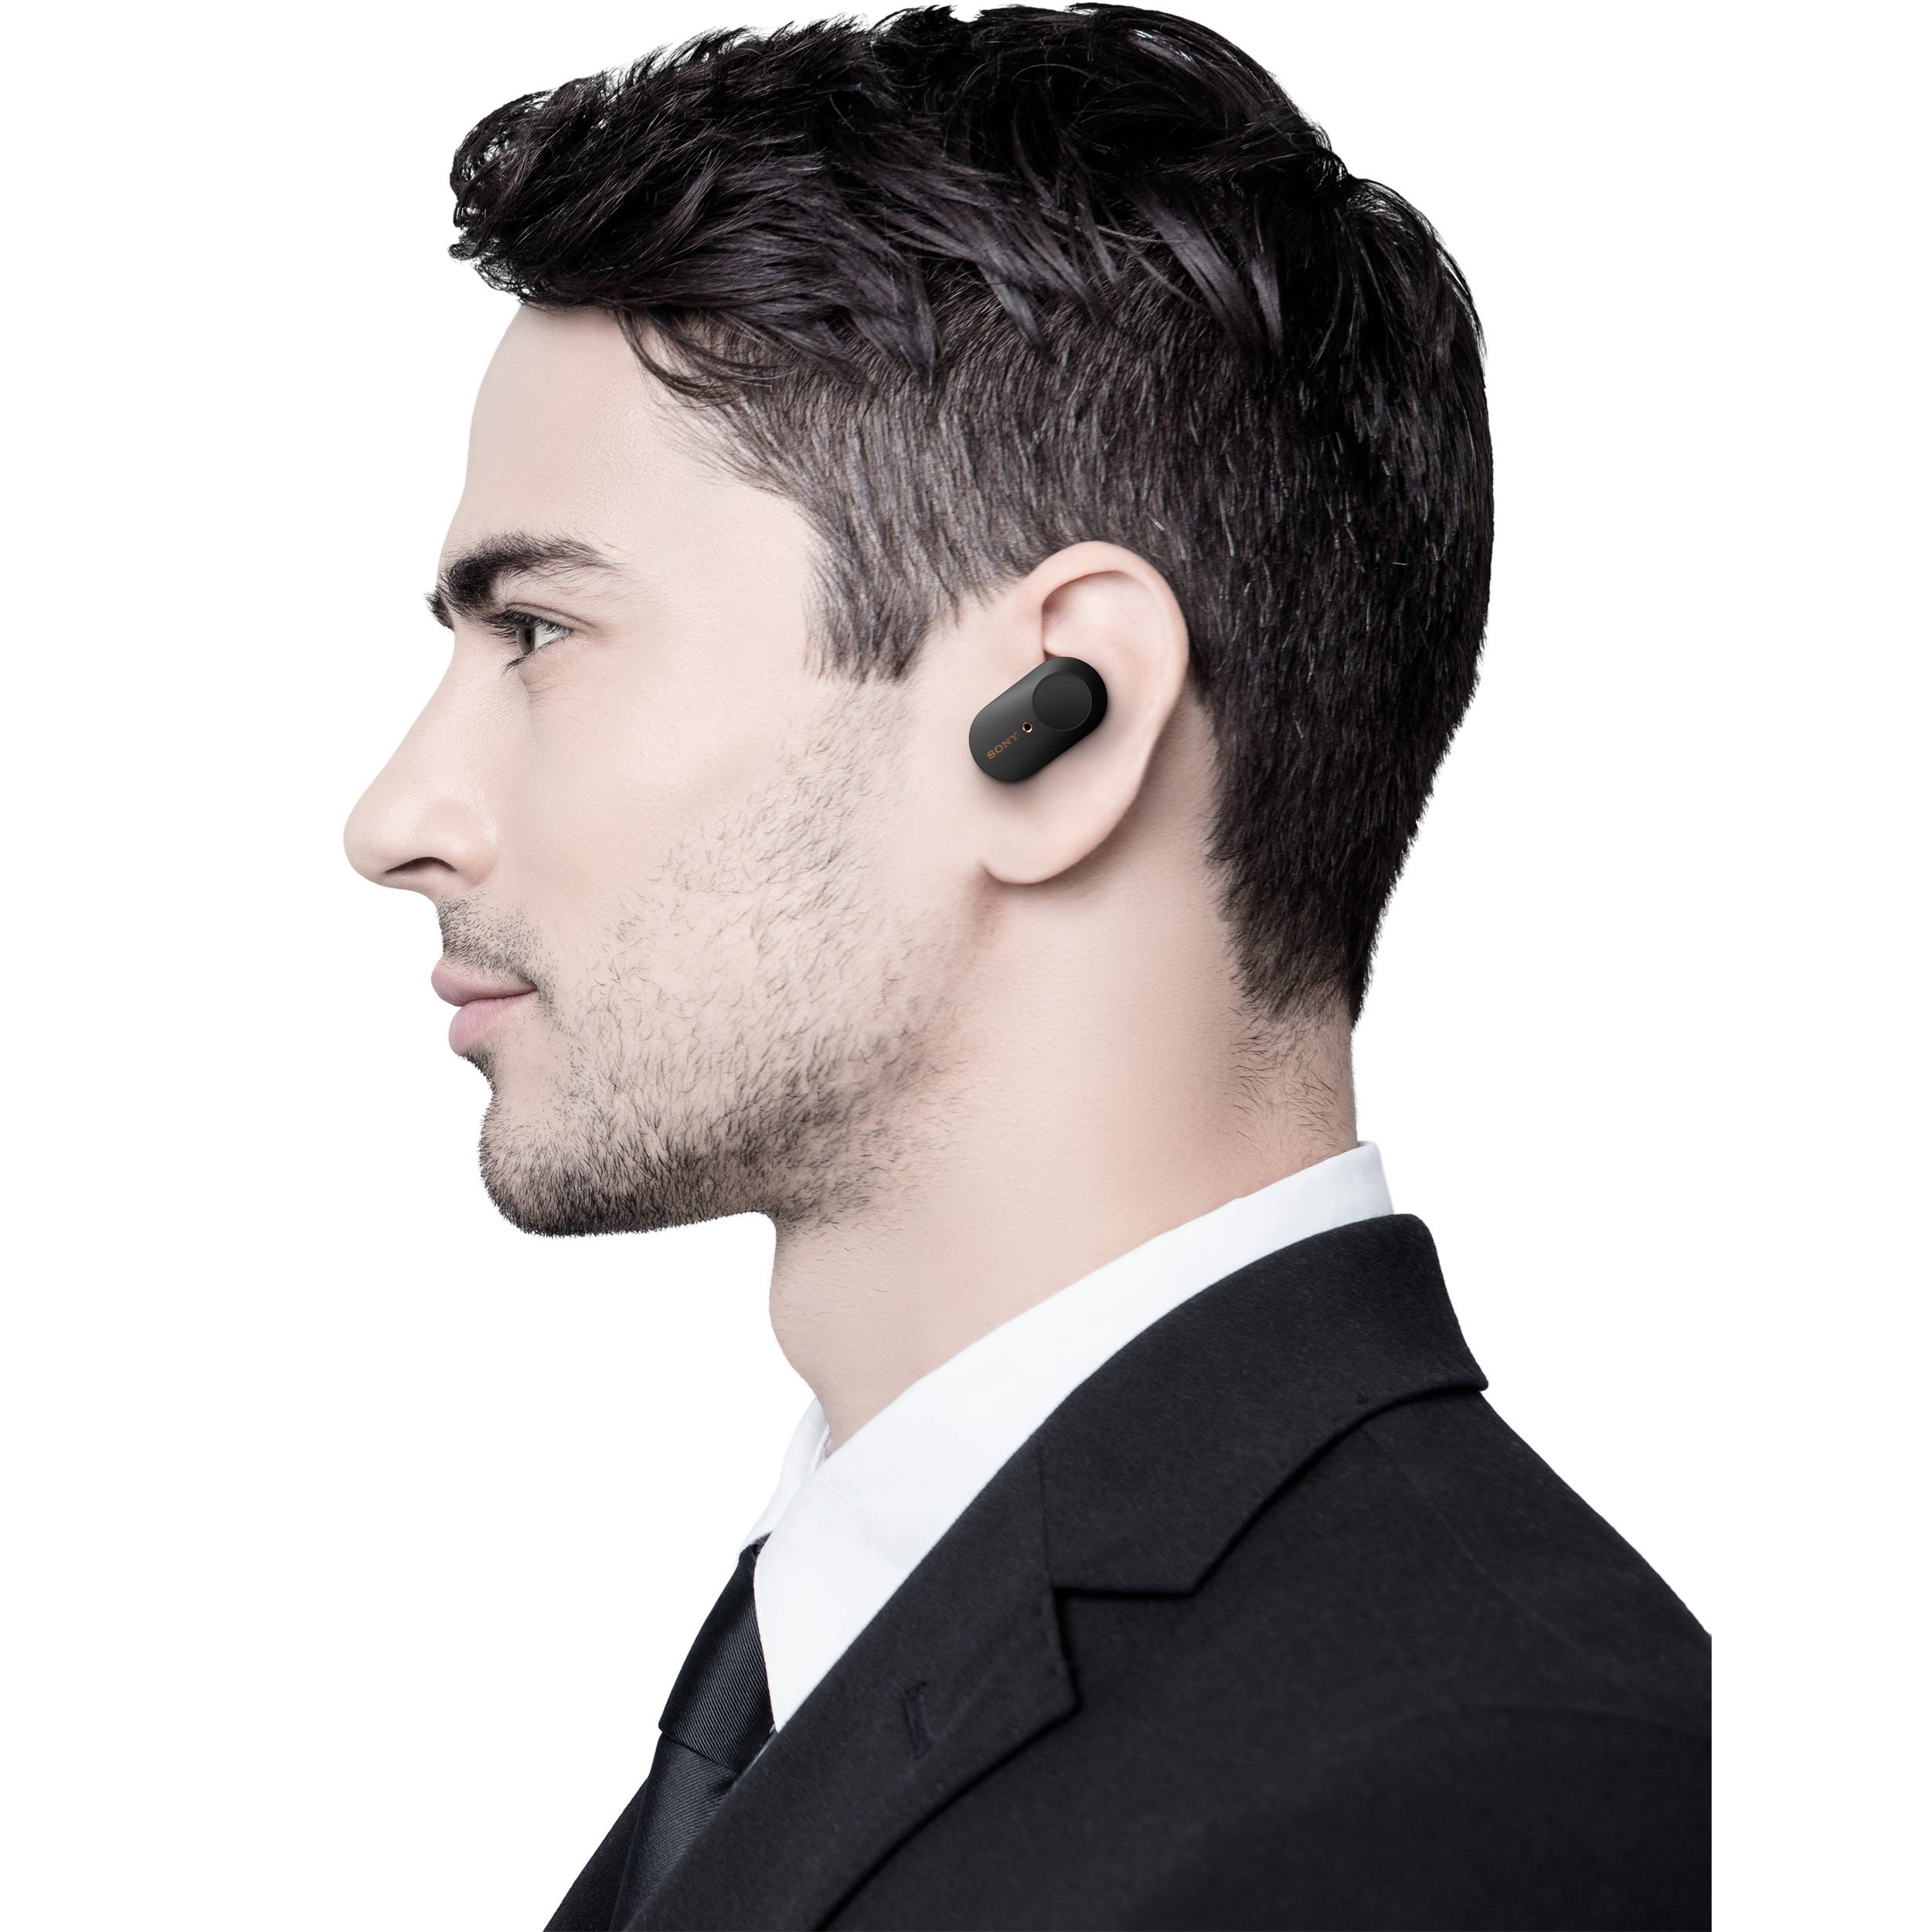 Sony Wf 1000xm3 True Wireless Noise Canceling In Ear Wf1000xm3 B